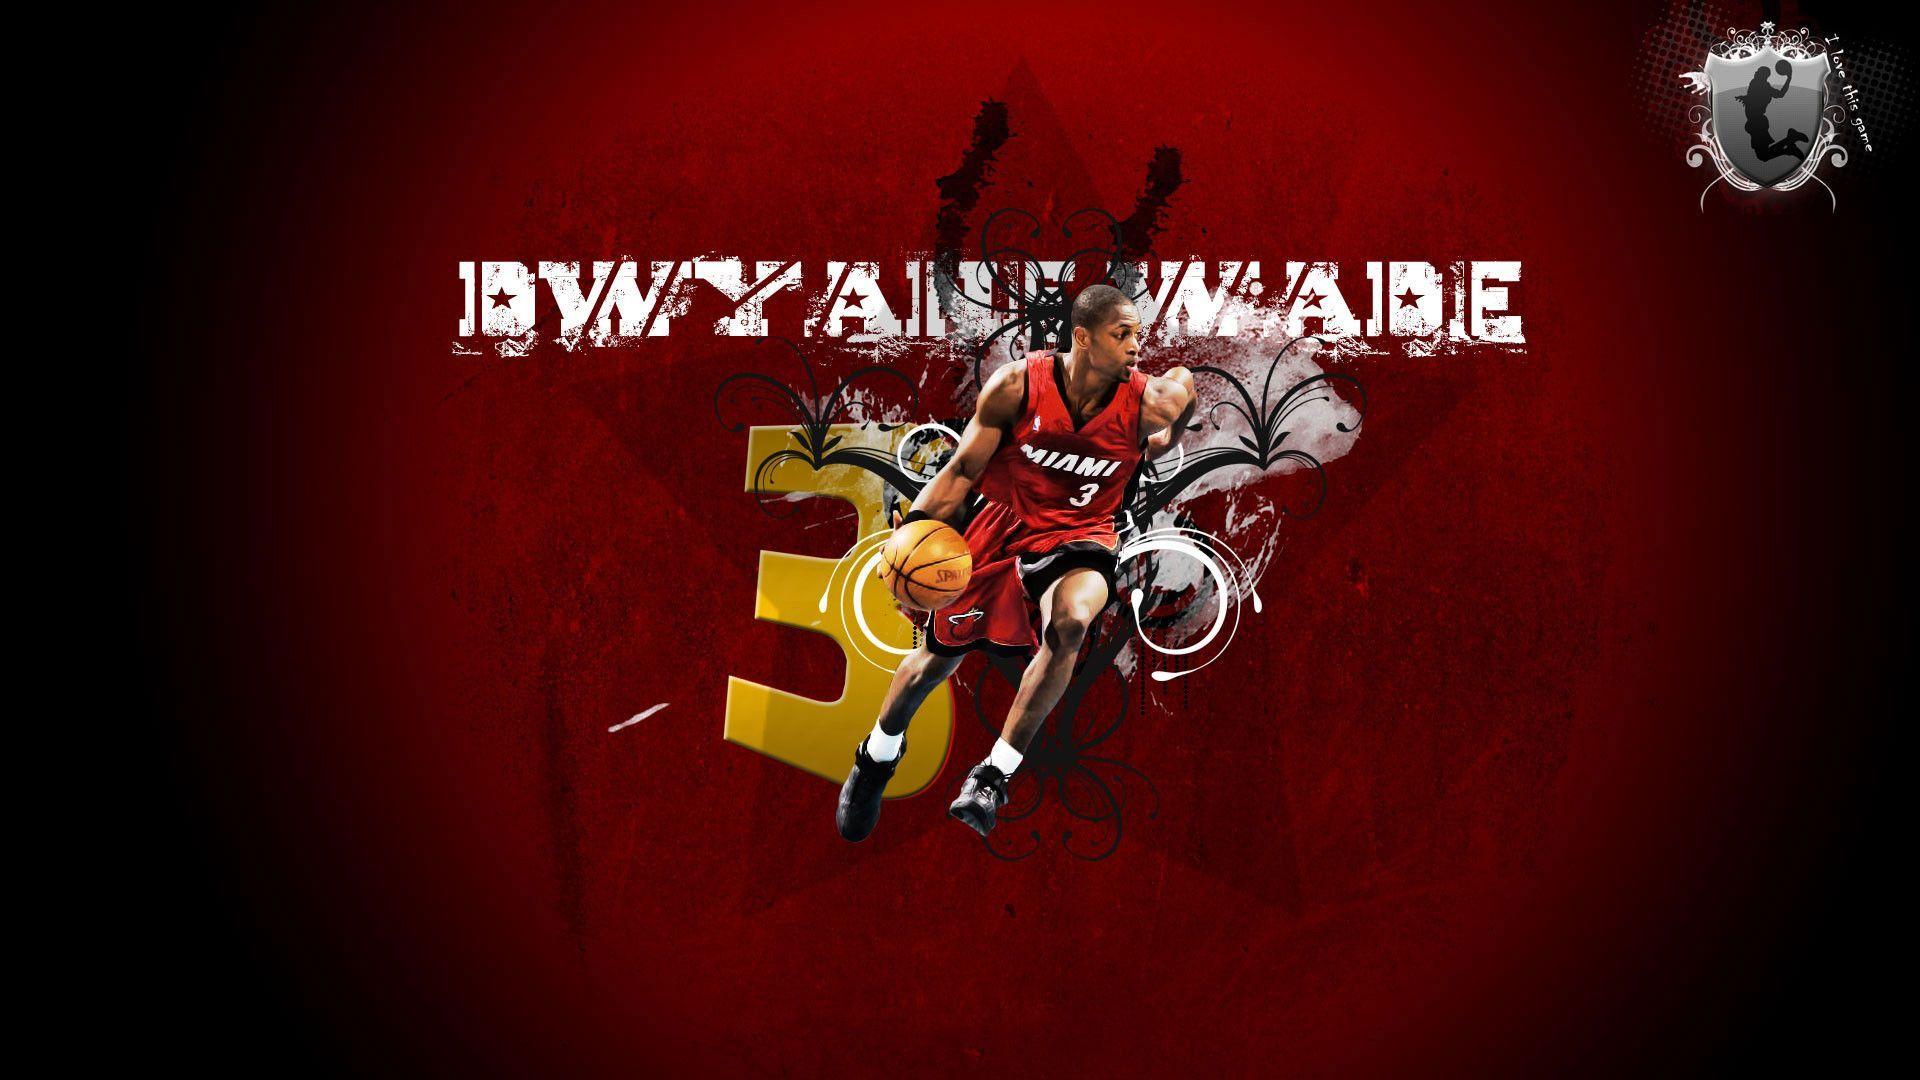 Dwyane Wade Miami Heat Artwork NBA Wallpaper Wide or HD. Male